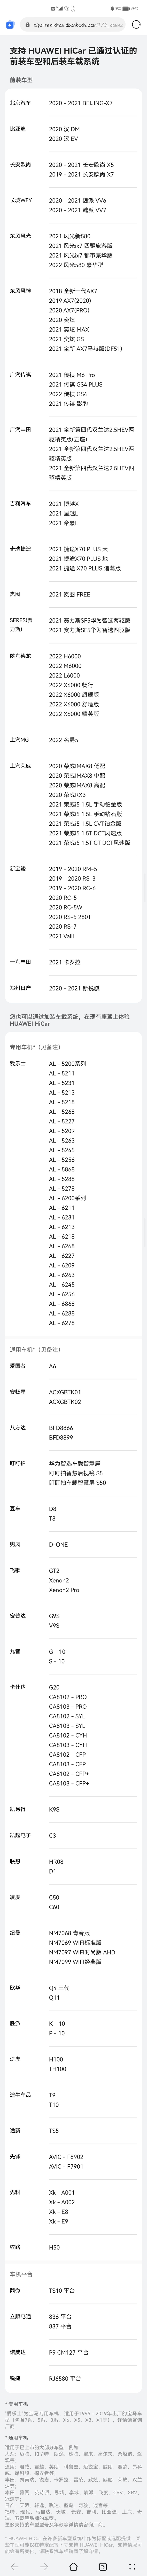 华为Hicar发布支持车型列表及后装车载系统列表